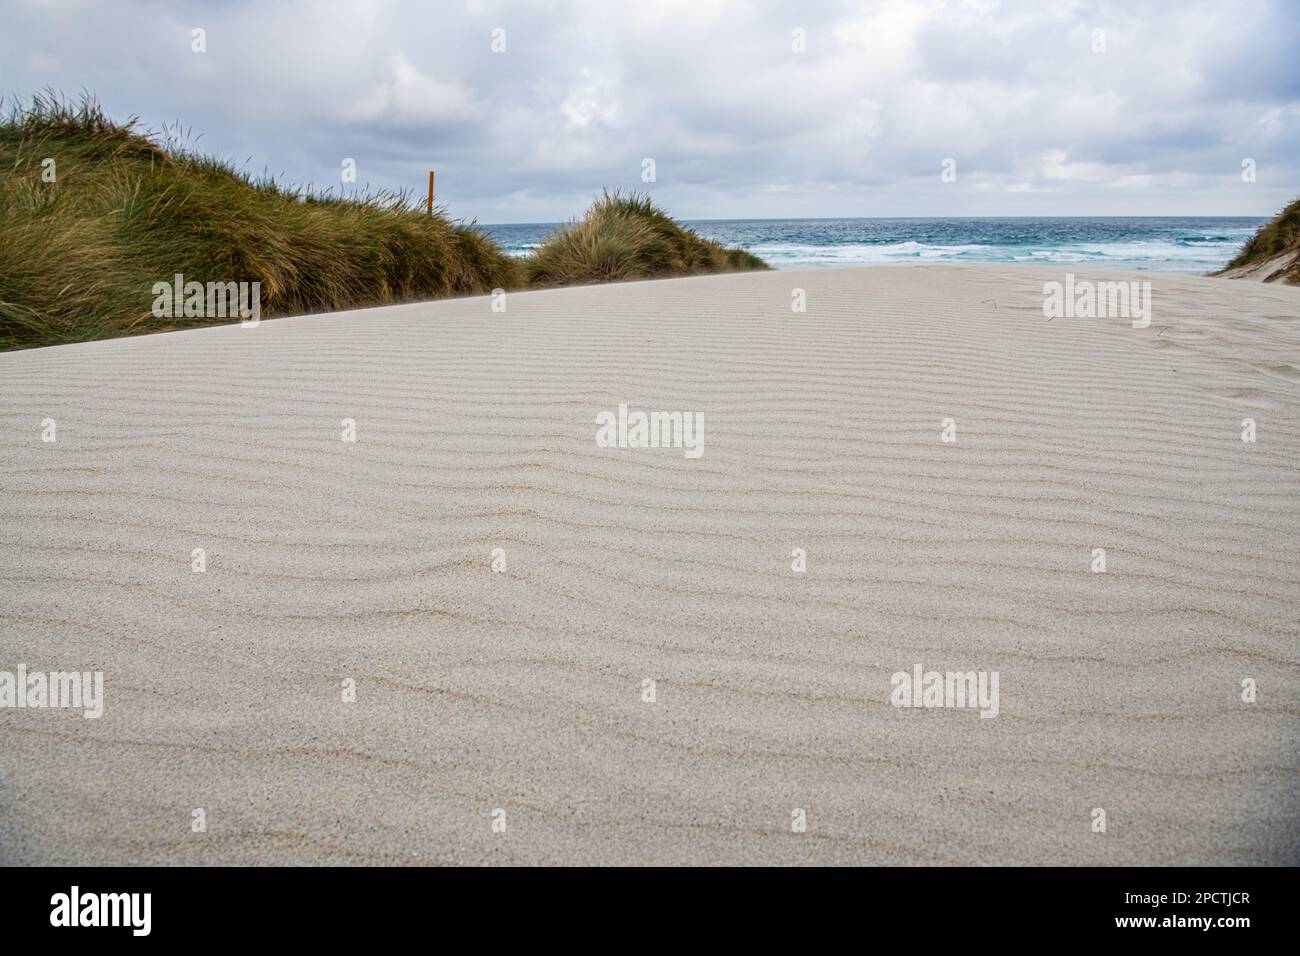 Dune di sabbia bianca e i modelli di increspature nella sabbia con l'oceano pacifico dietro, una scena minimalista in Aotearoa Nuova Zelanda. Foto Stock